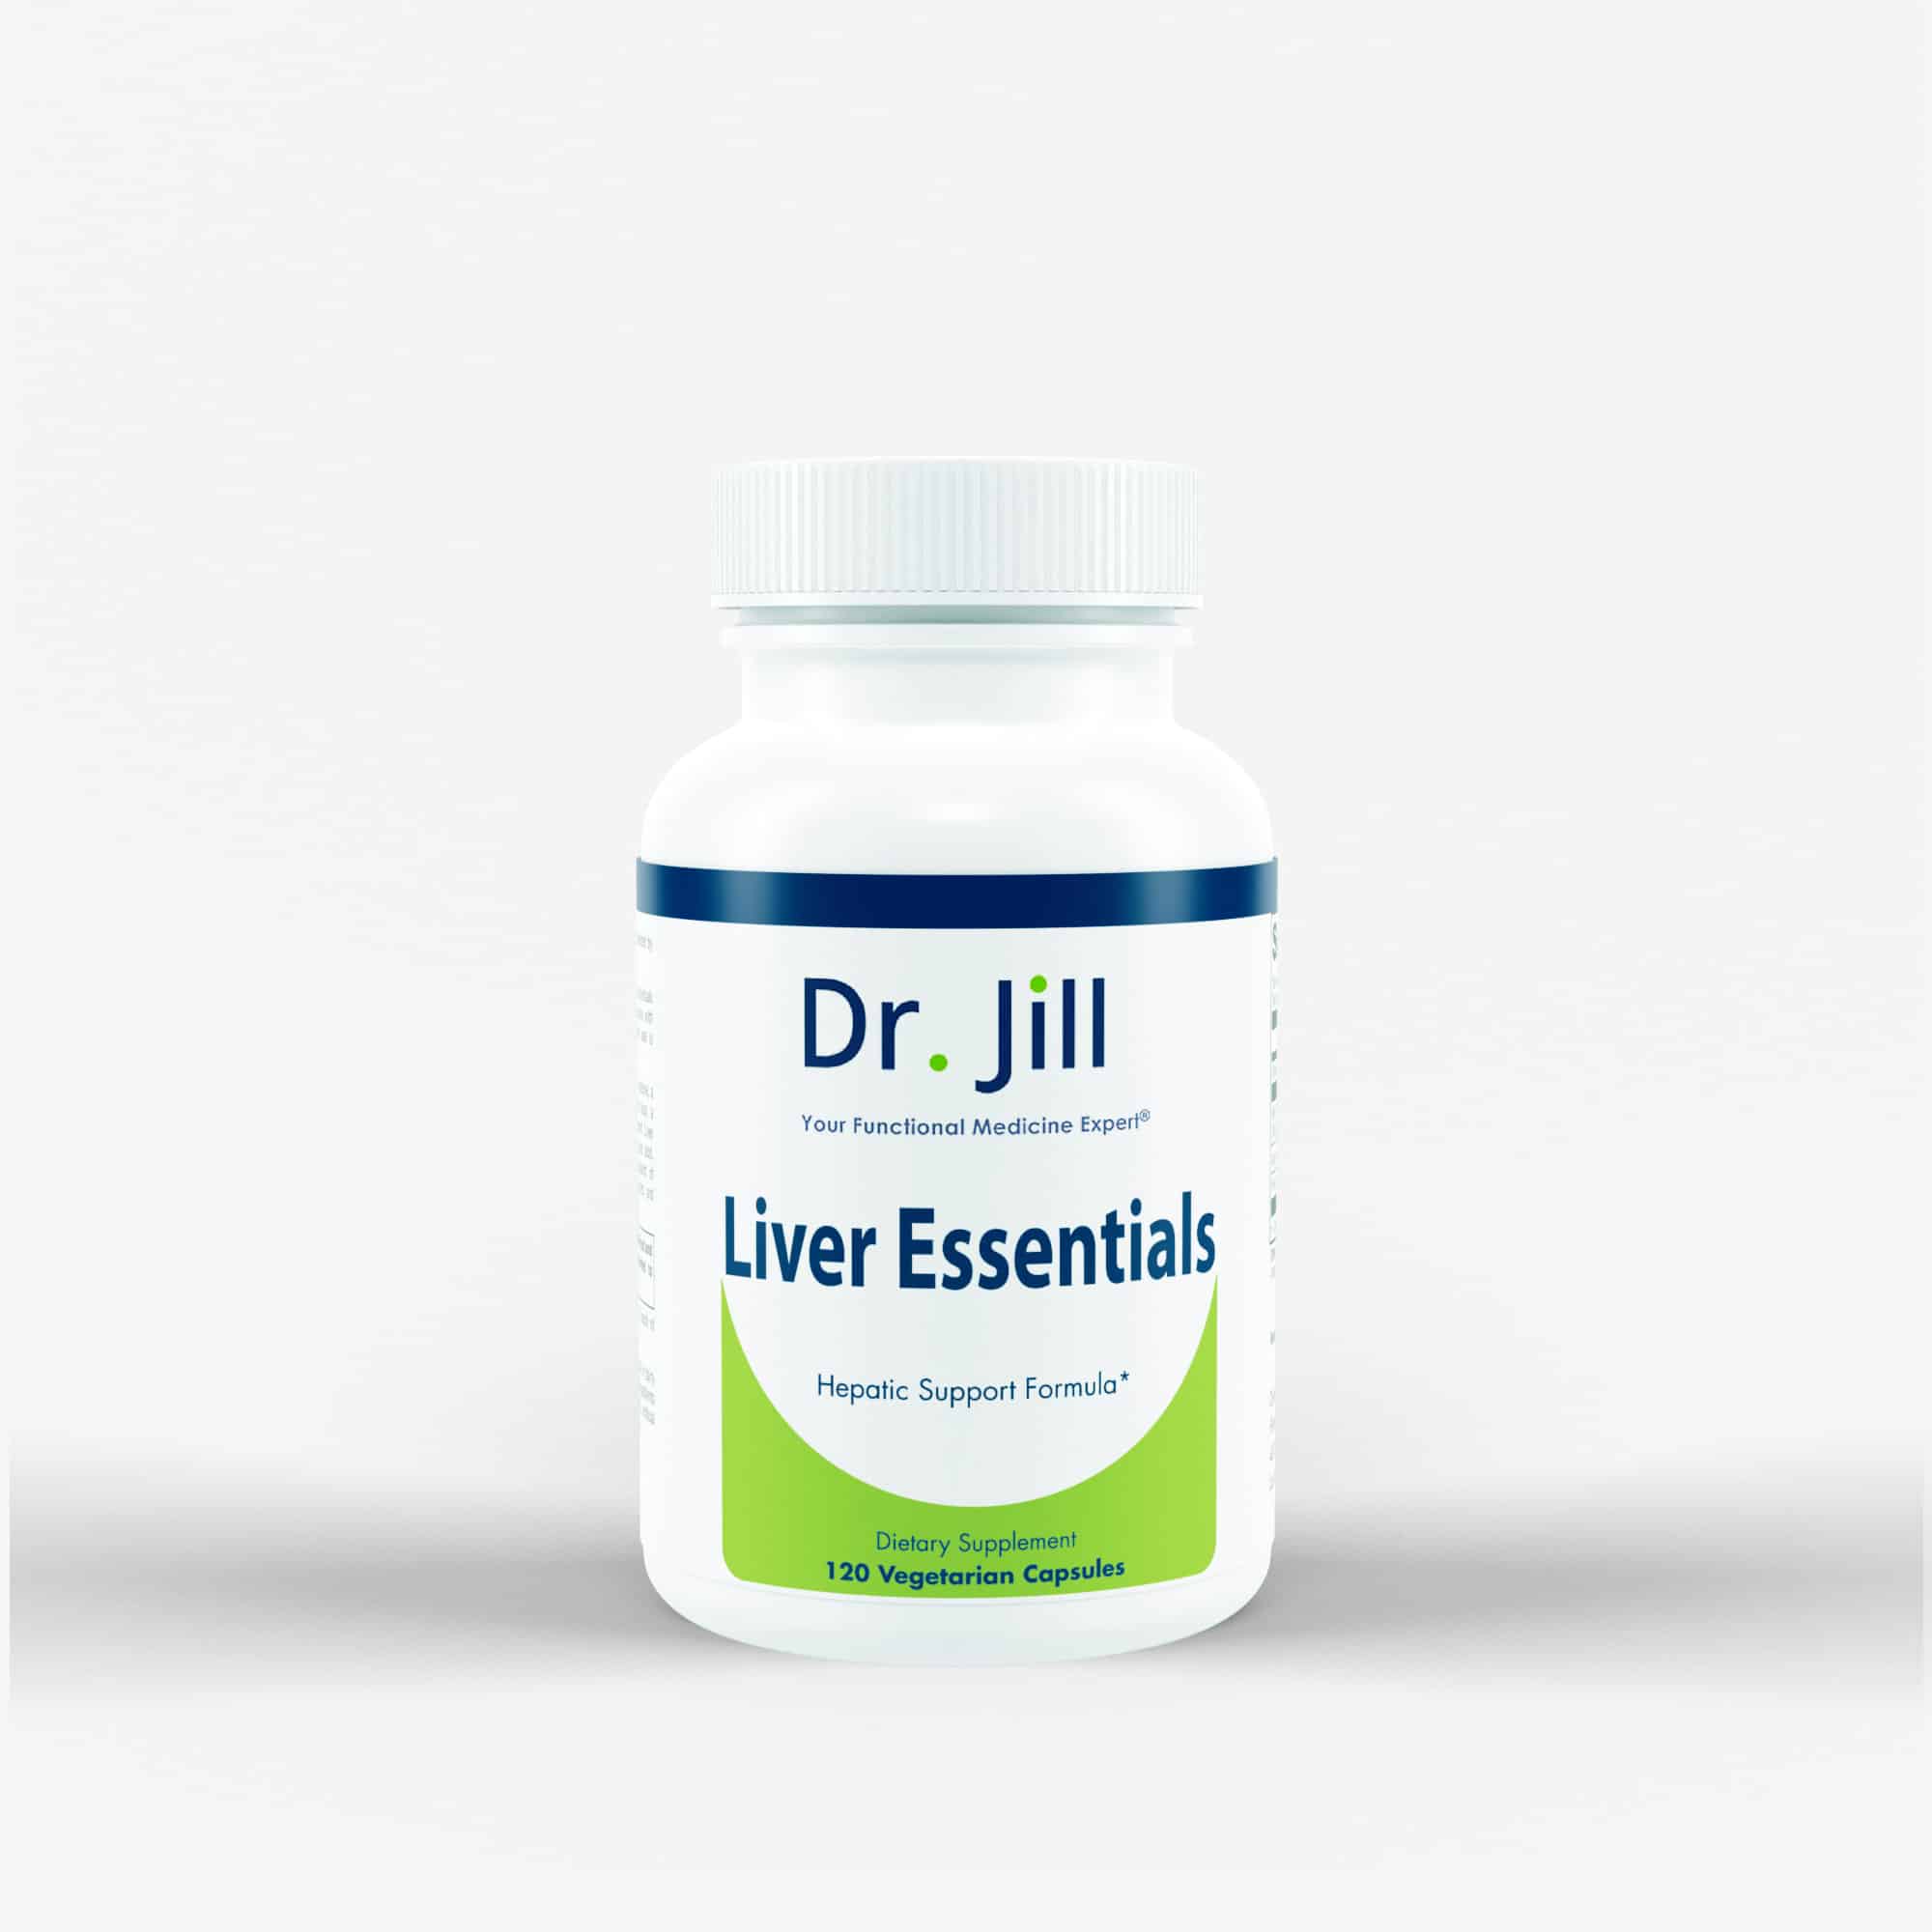 Dr. Jill's Liver Essentials